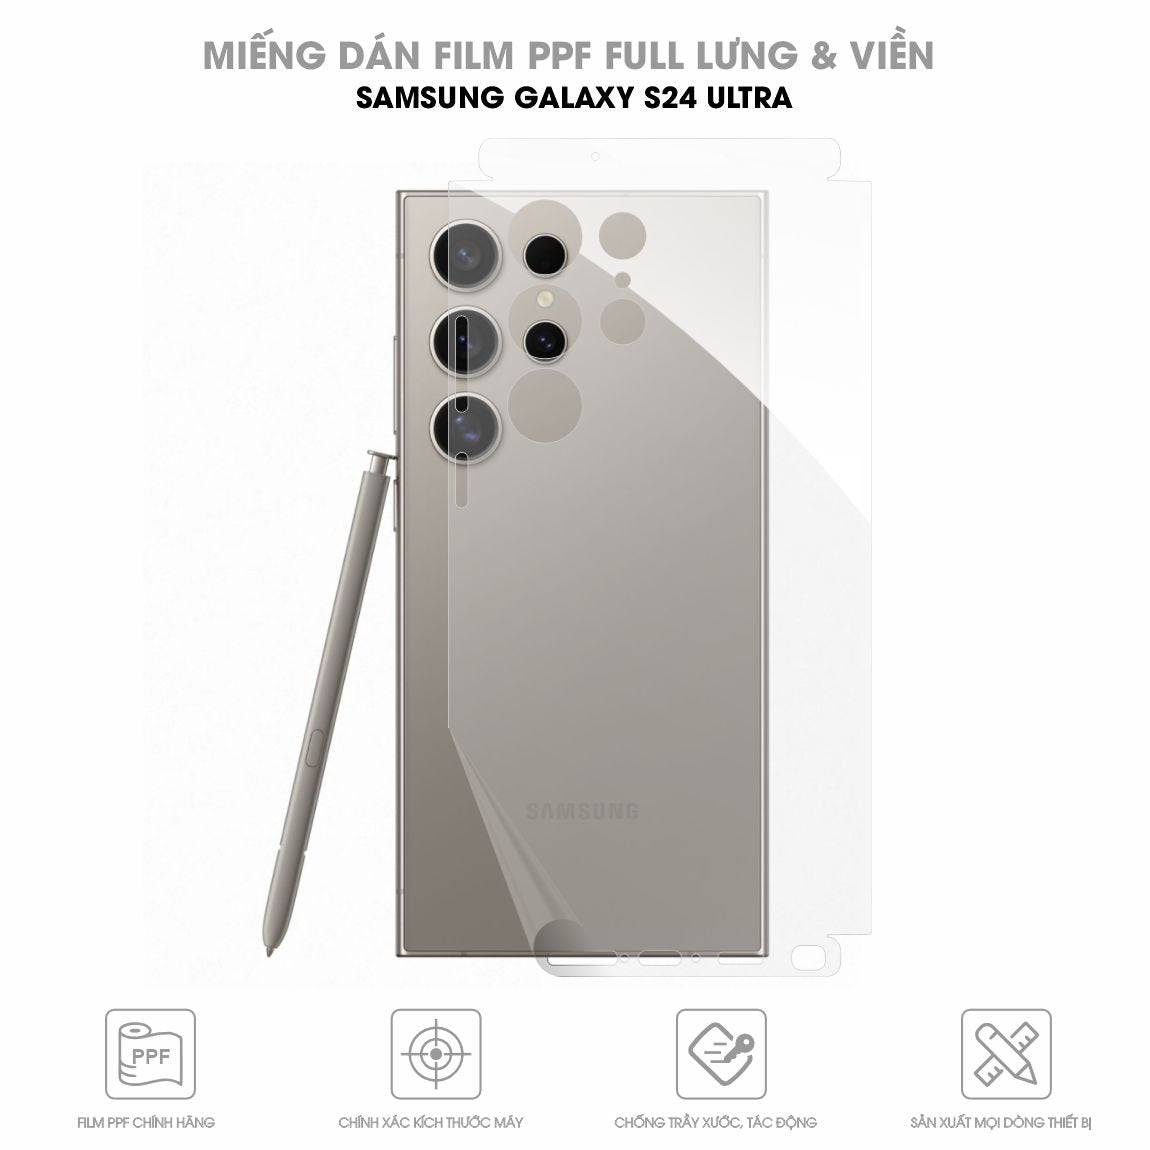 Miếng dán PPF Samsung Galaxy S24 Ultra full lưng viền